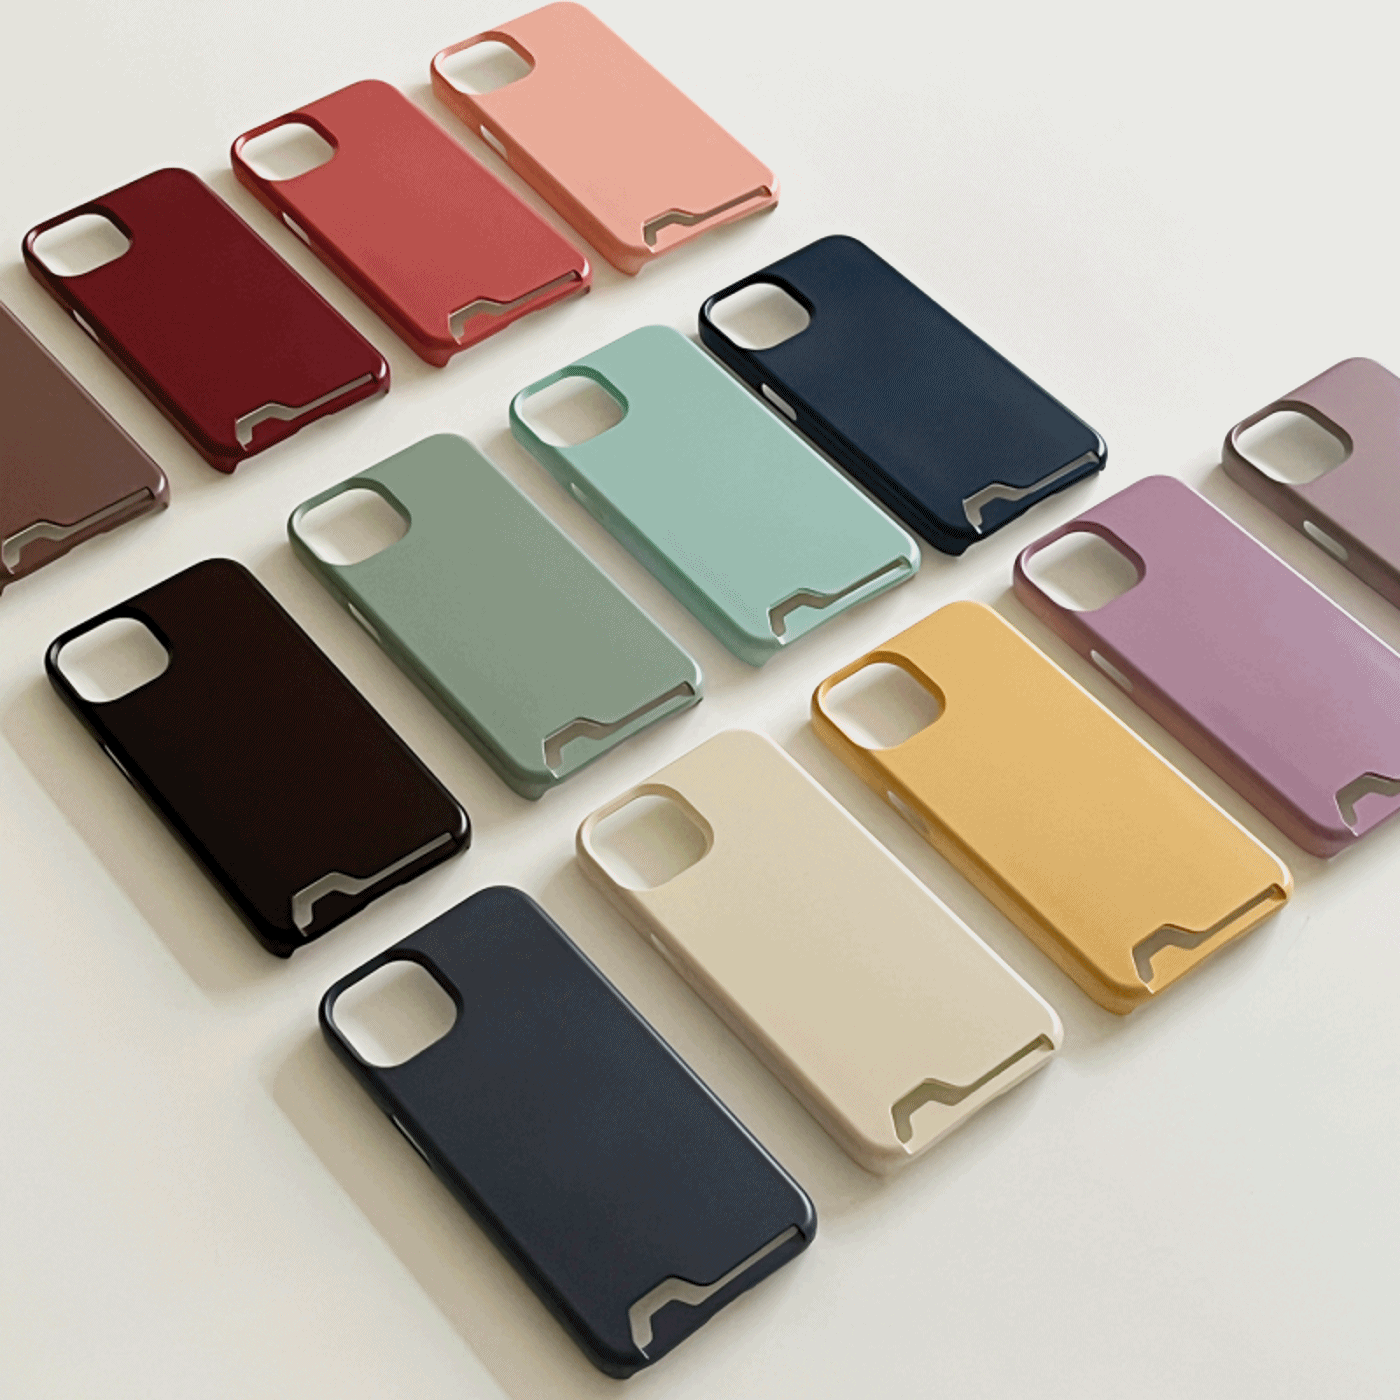 f/w modern muji design [card storage phone case]